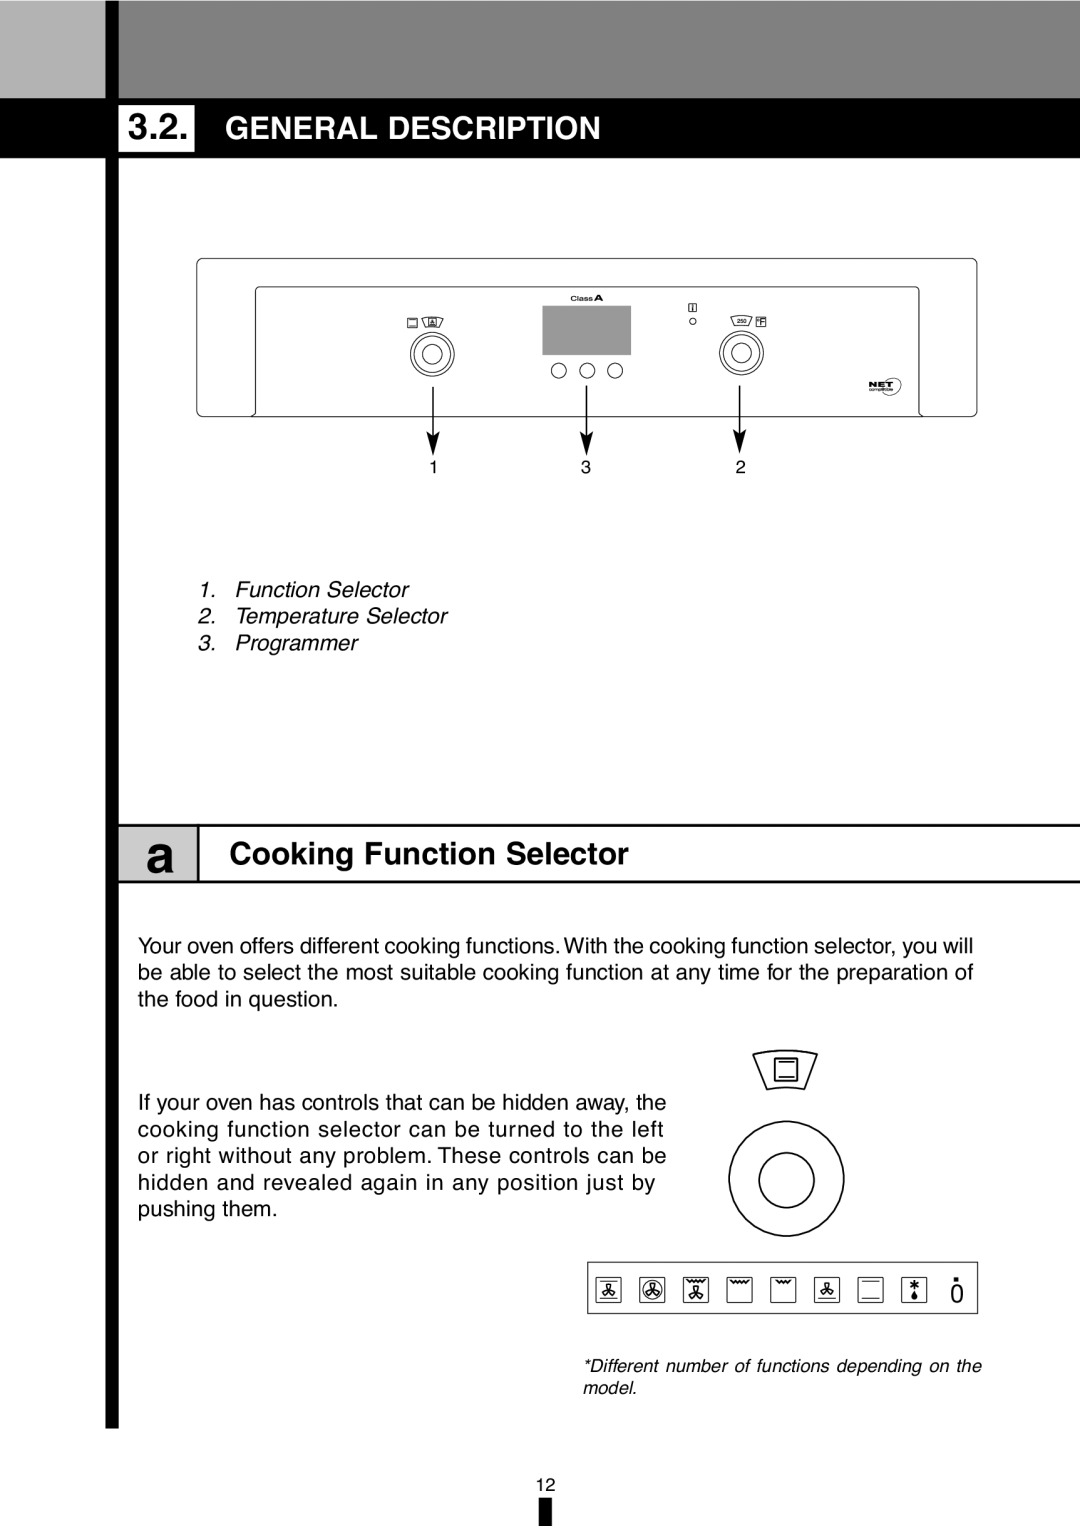 Fagor America 5HA-196X manual General Description, Cooking Function Selector, Function Selector 2. Temperature Selector 